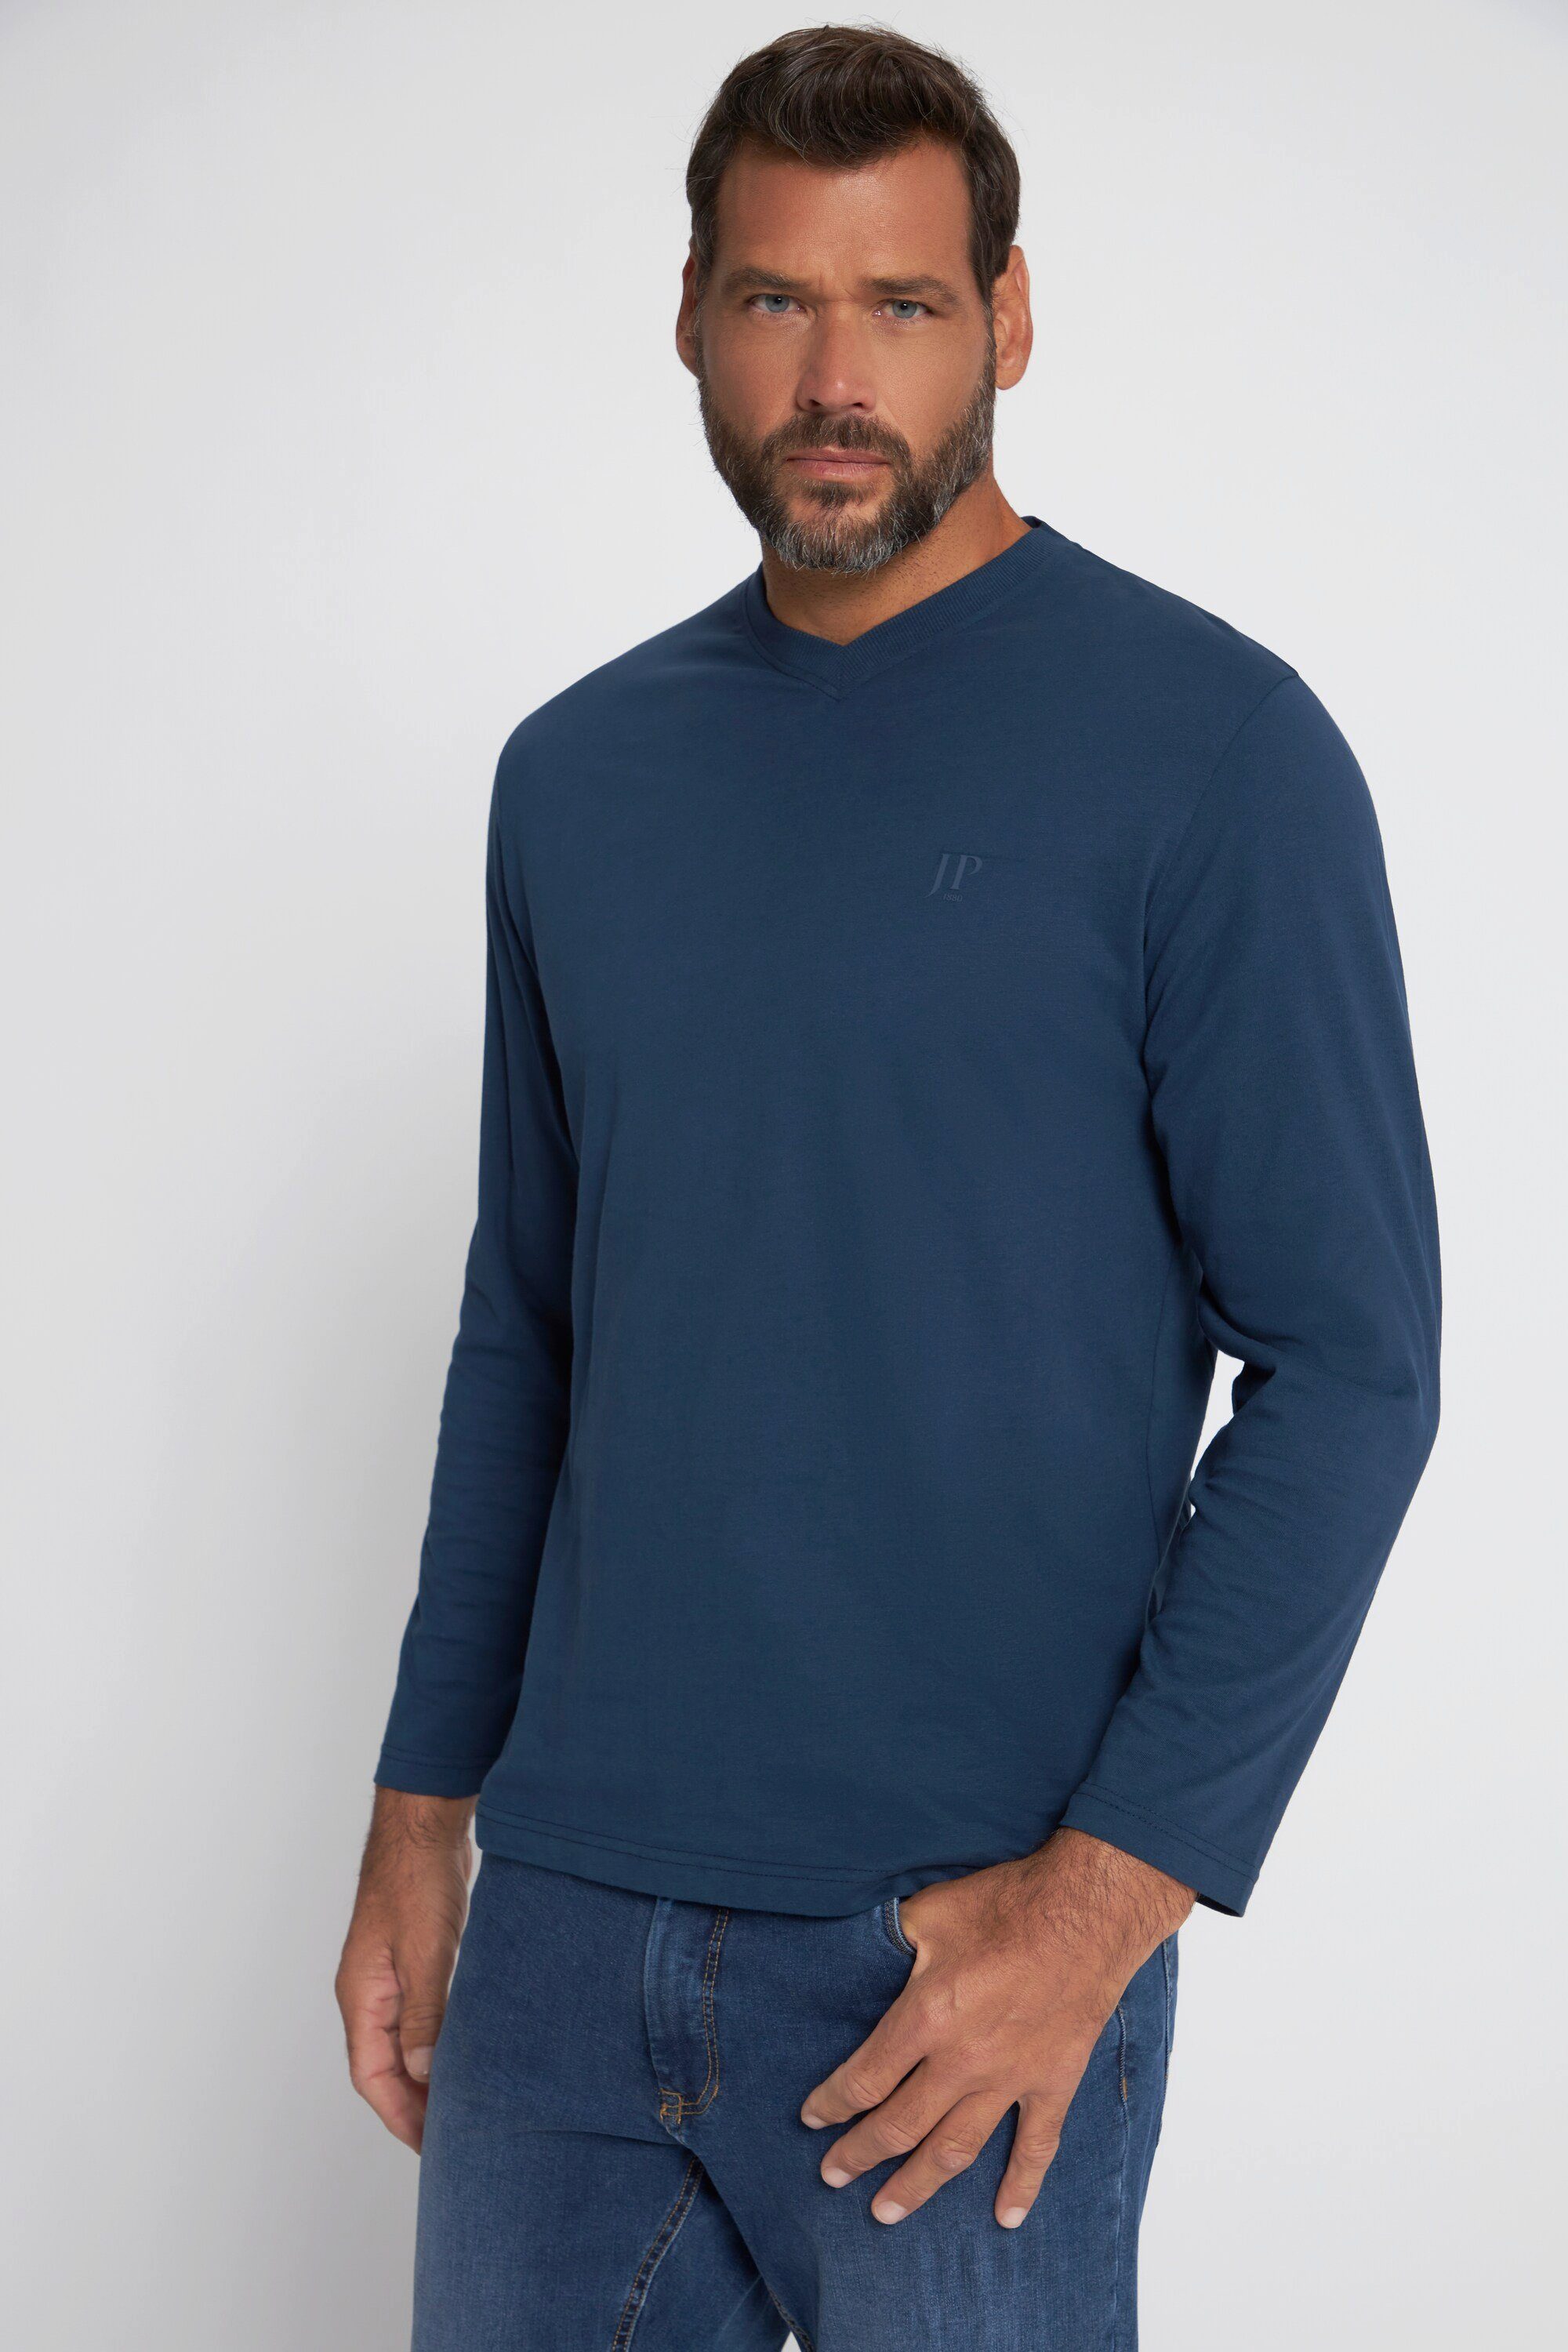 nachtblau V-Ausschnitt mattes bis XL T-Shirt T-Shirt Langarm 8 JP1880